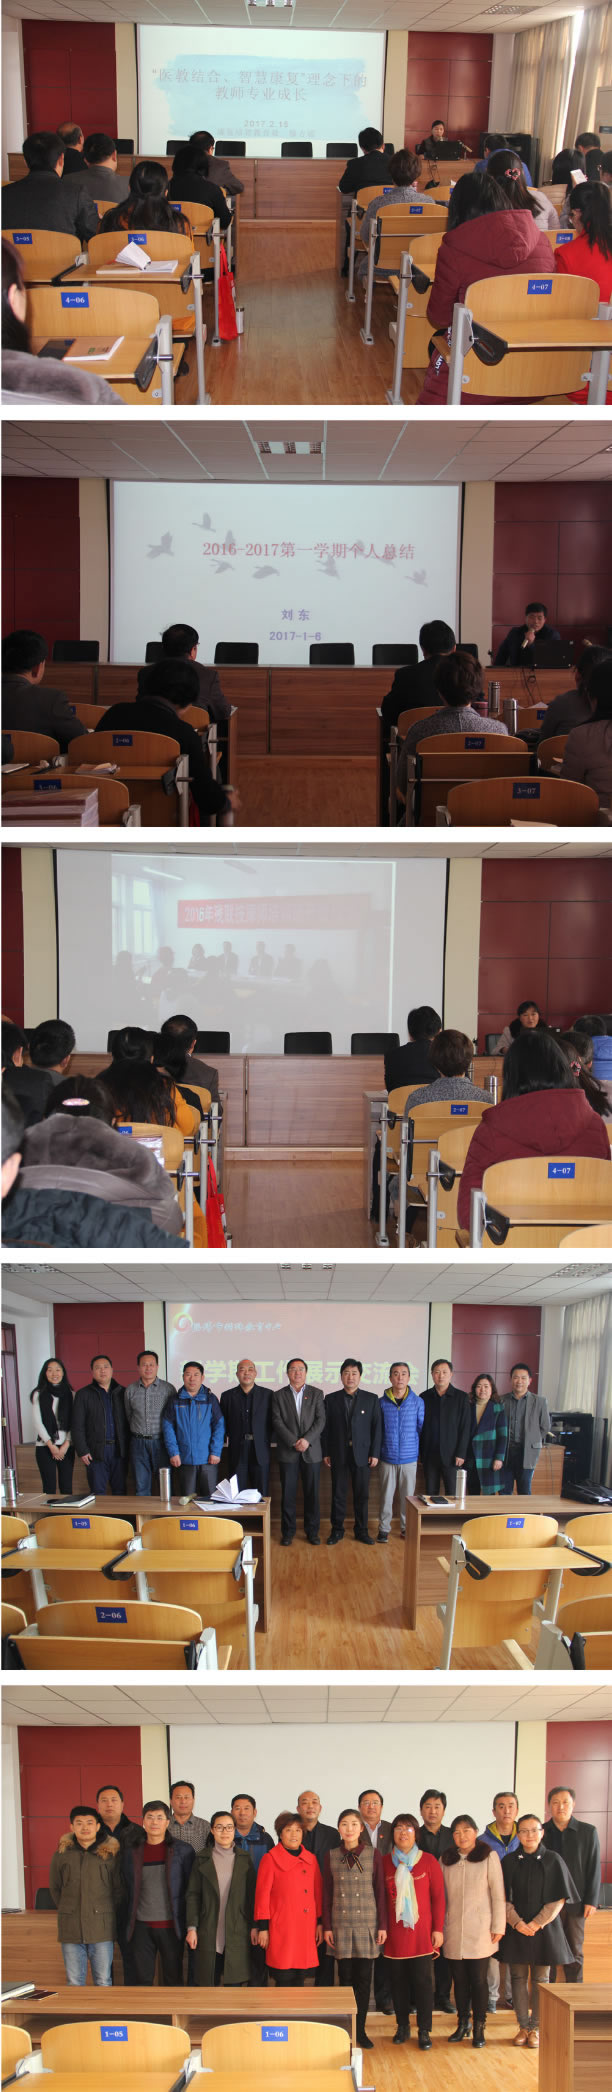 淄博市特殊教育中心组织开展新学期学习教育系列活动